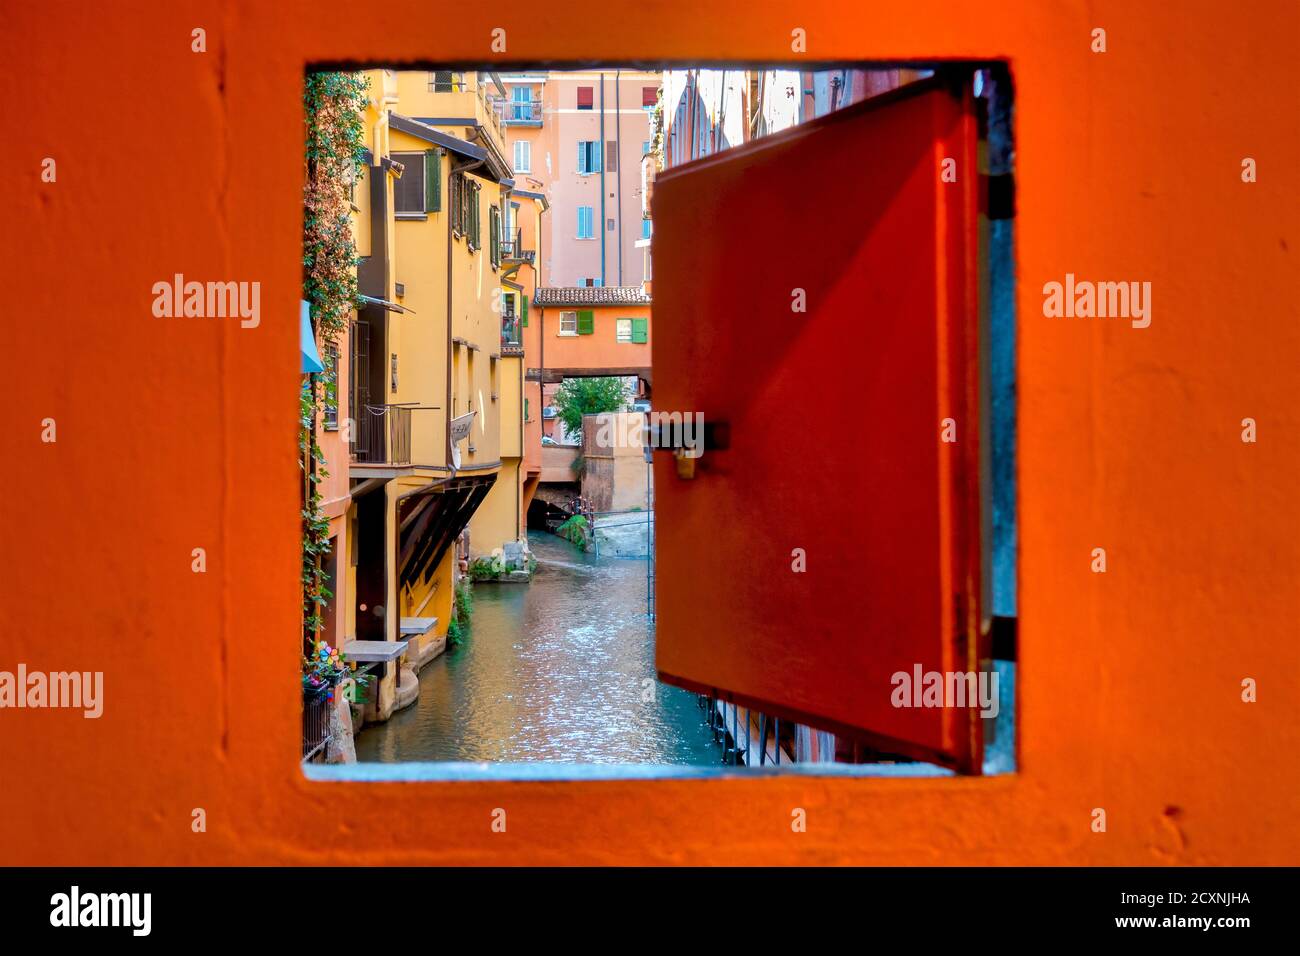 Finestrella di Via Piella si affaccia sul canale delle Moline, Bologna, Italia Foto Stock